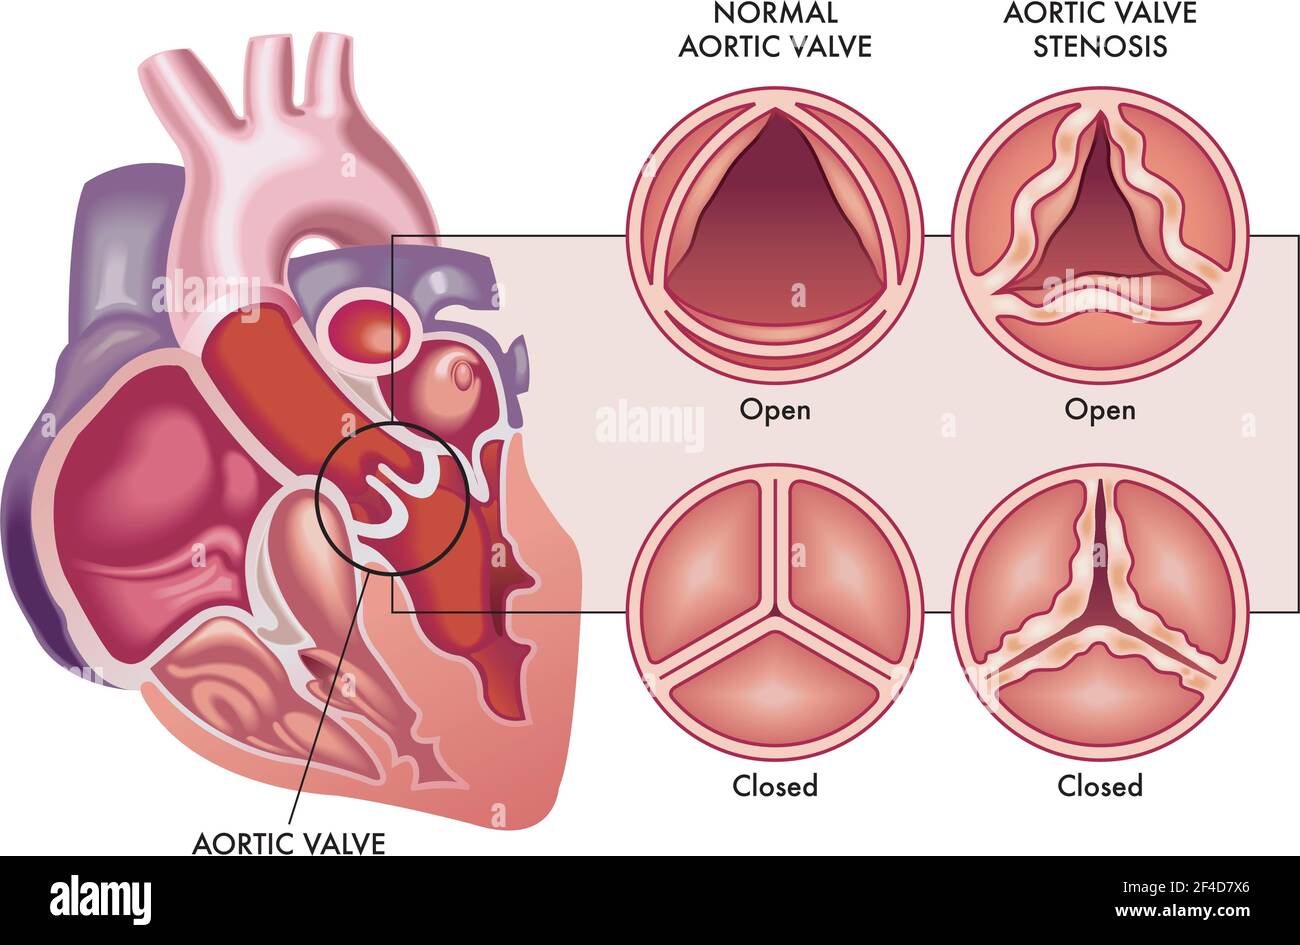 L'illustrazione medica mostra la differenza tra una valvola aortica normale e una con stenosi, aperta e chiusa, e la sua posizione nel cuore, con un Illustrazione Vettoriale